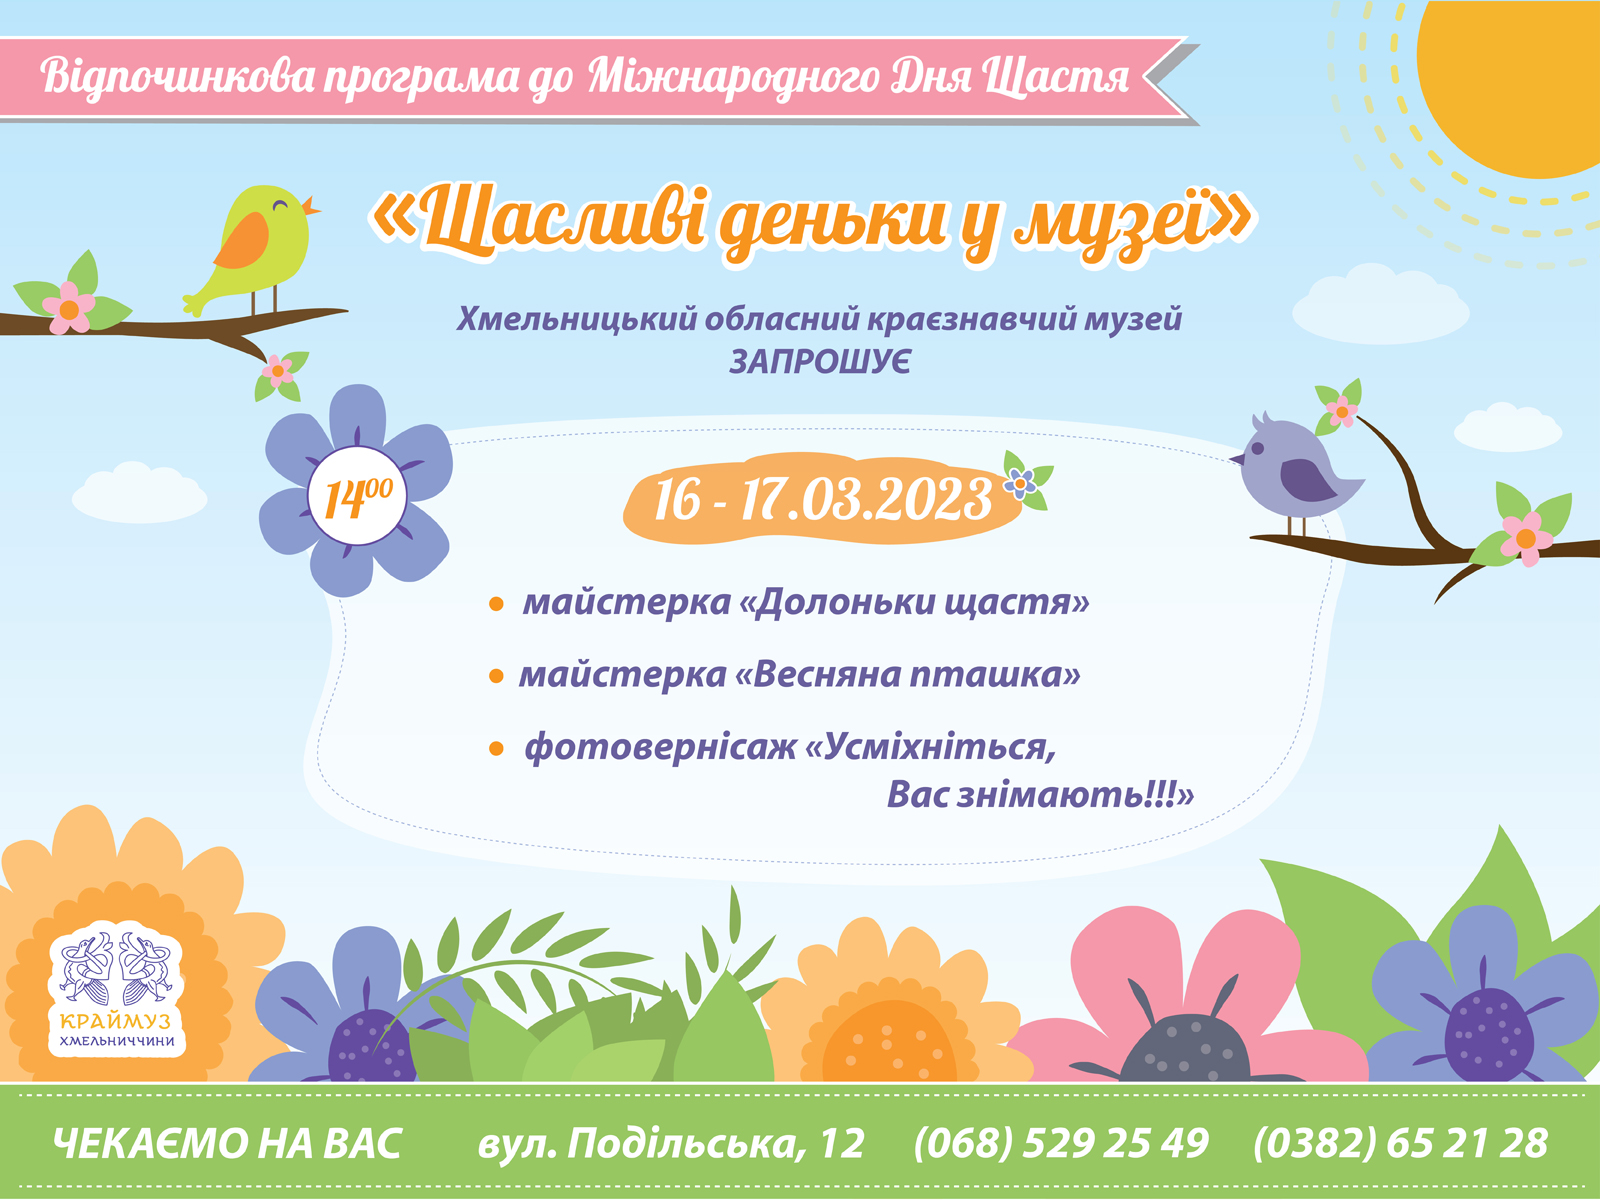 (Українська) Відпочинкова програма «Щасливі деньки у музеї»